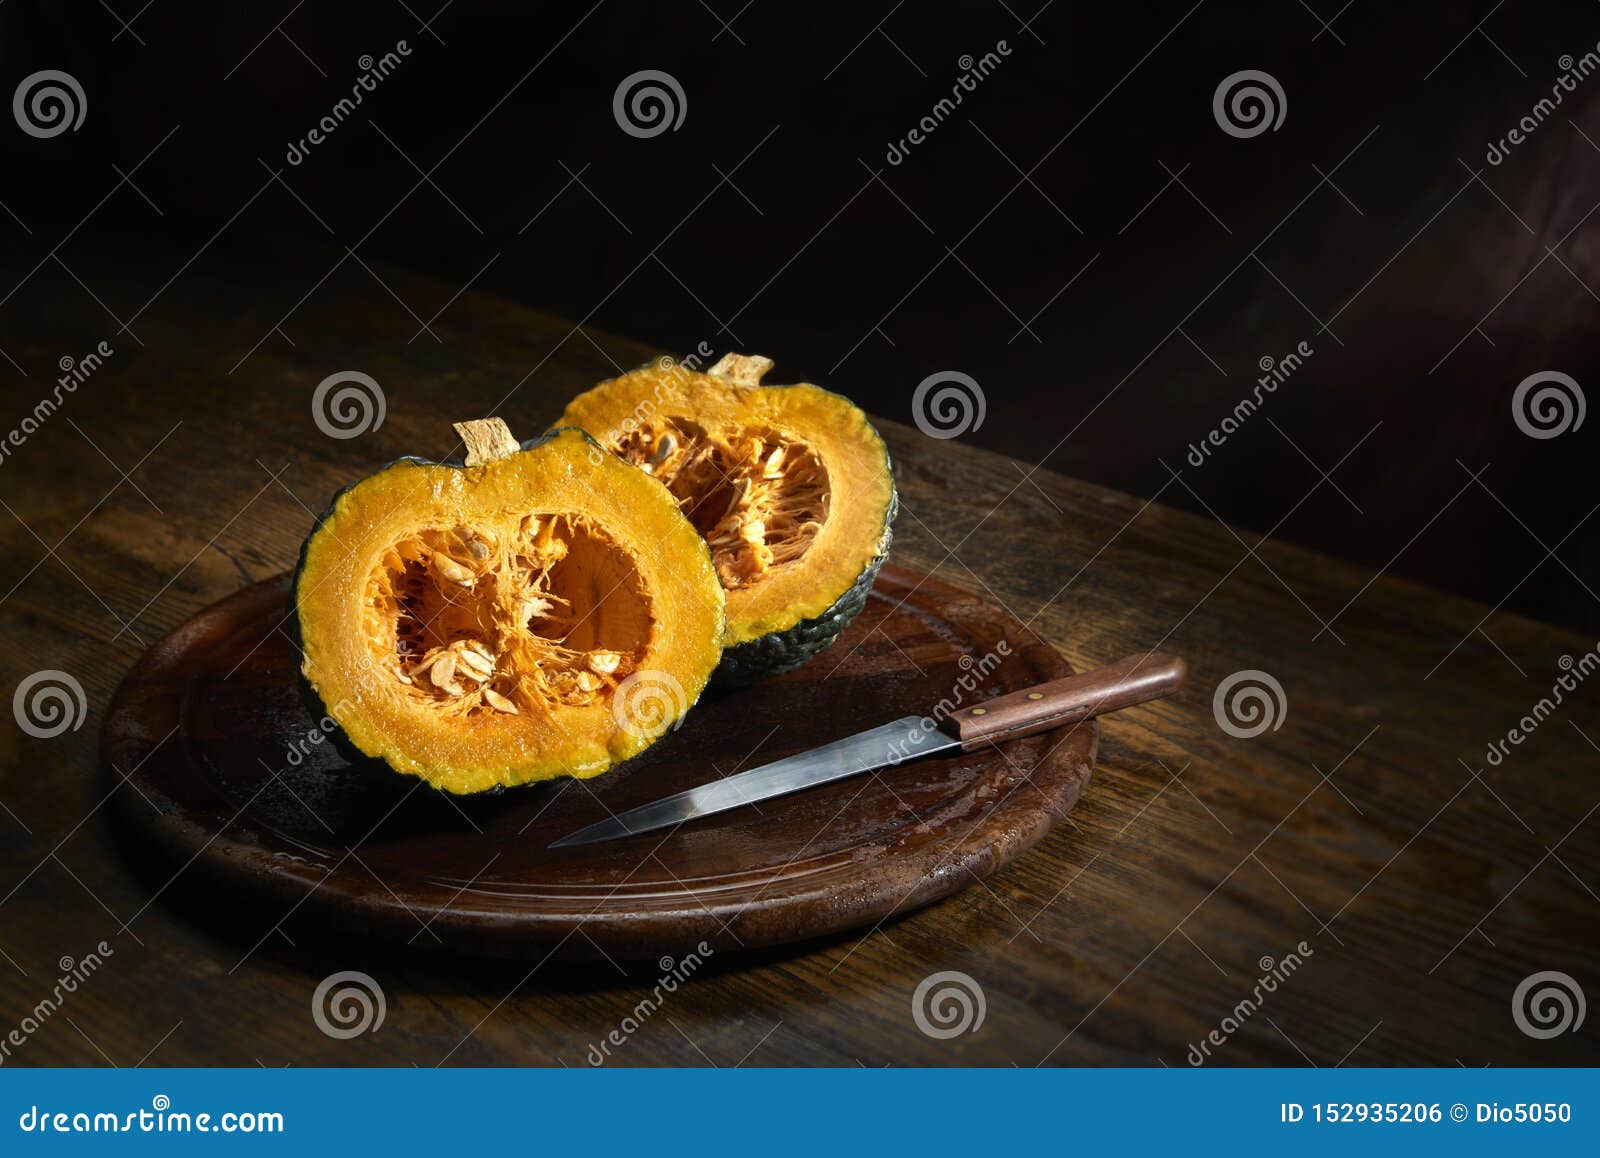 pumpkin kabocha sliced